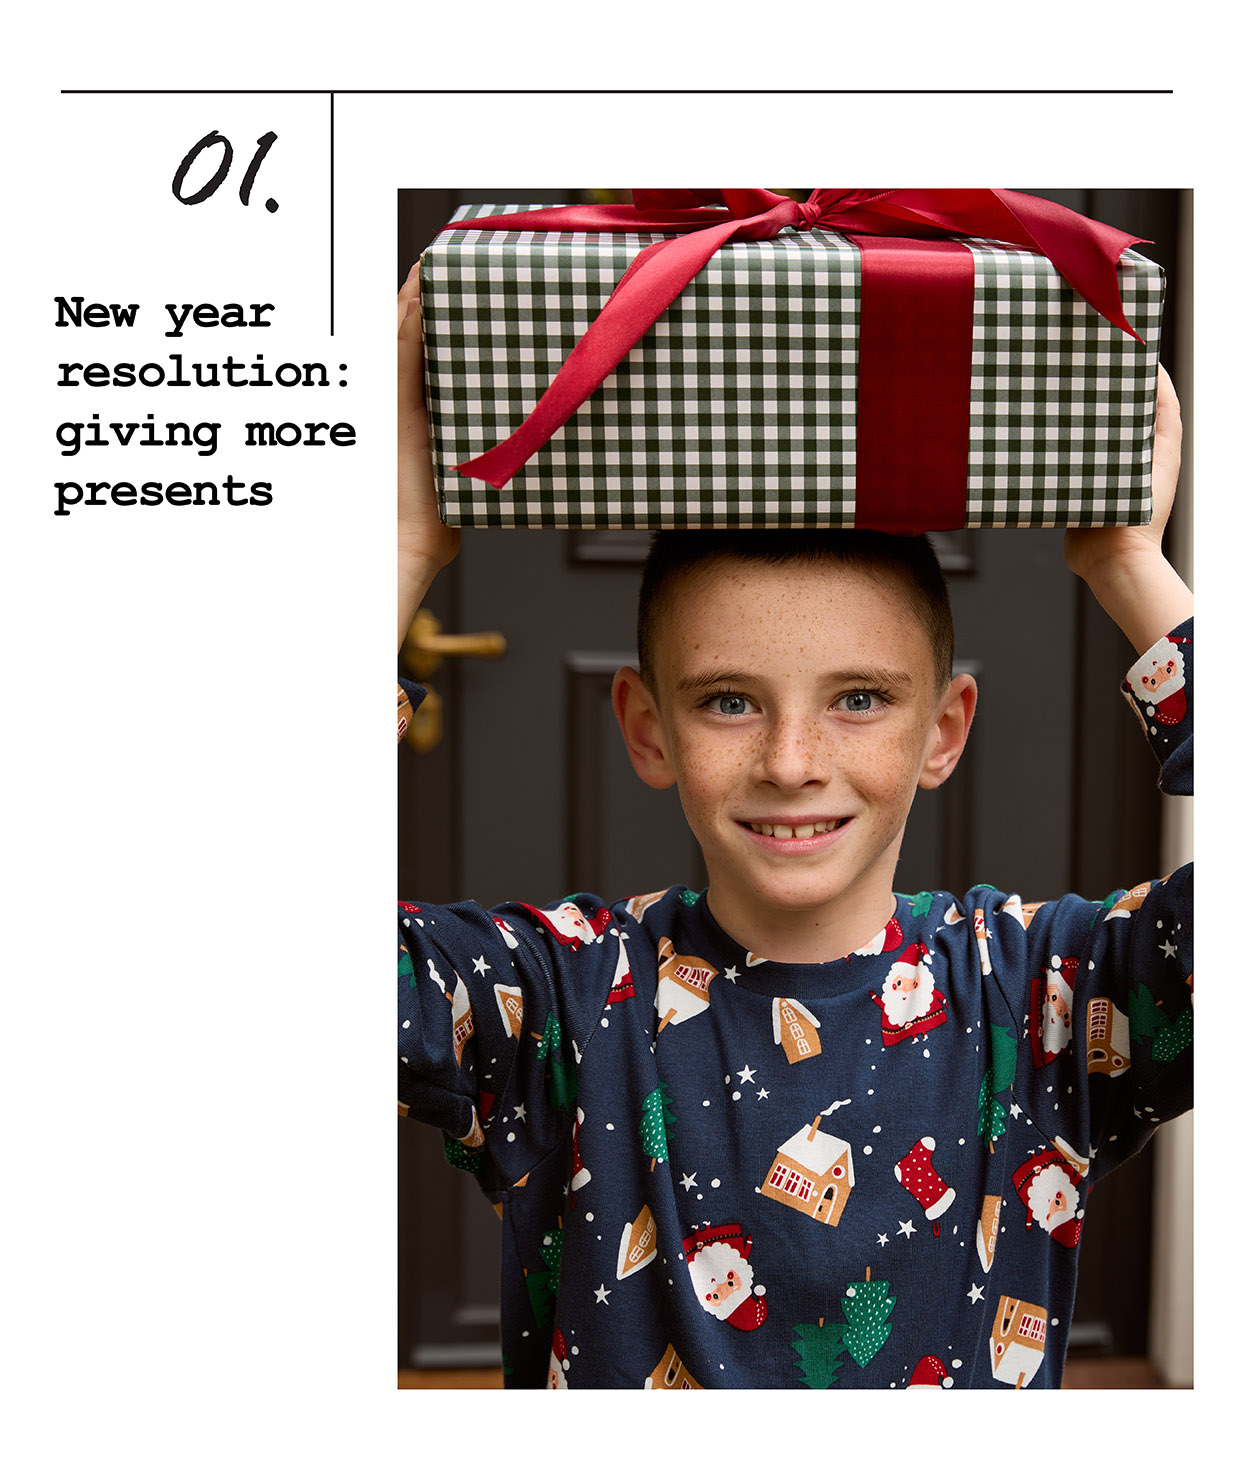 Dječak drži poklon iznad glave i nosi novogodišnju pidžamu